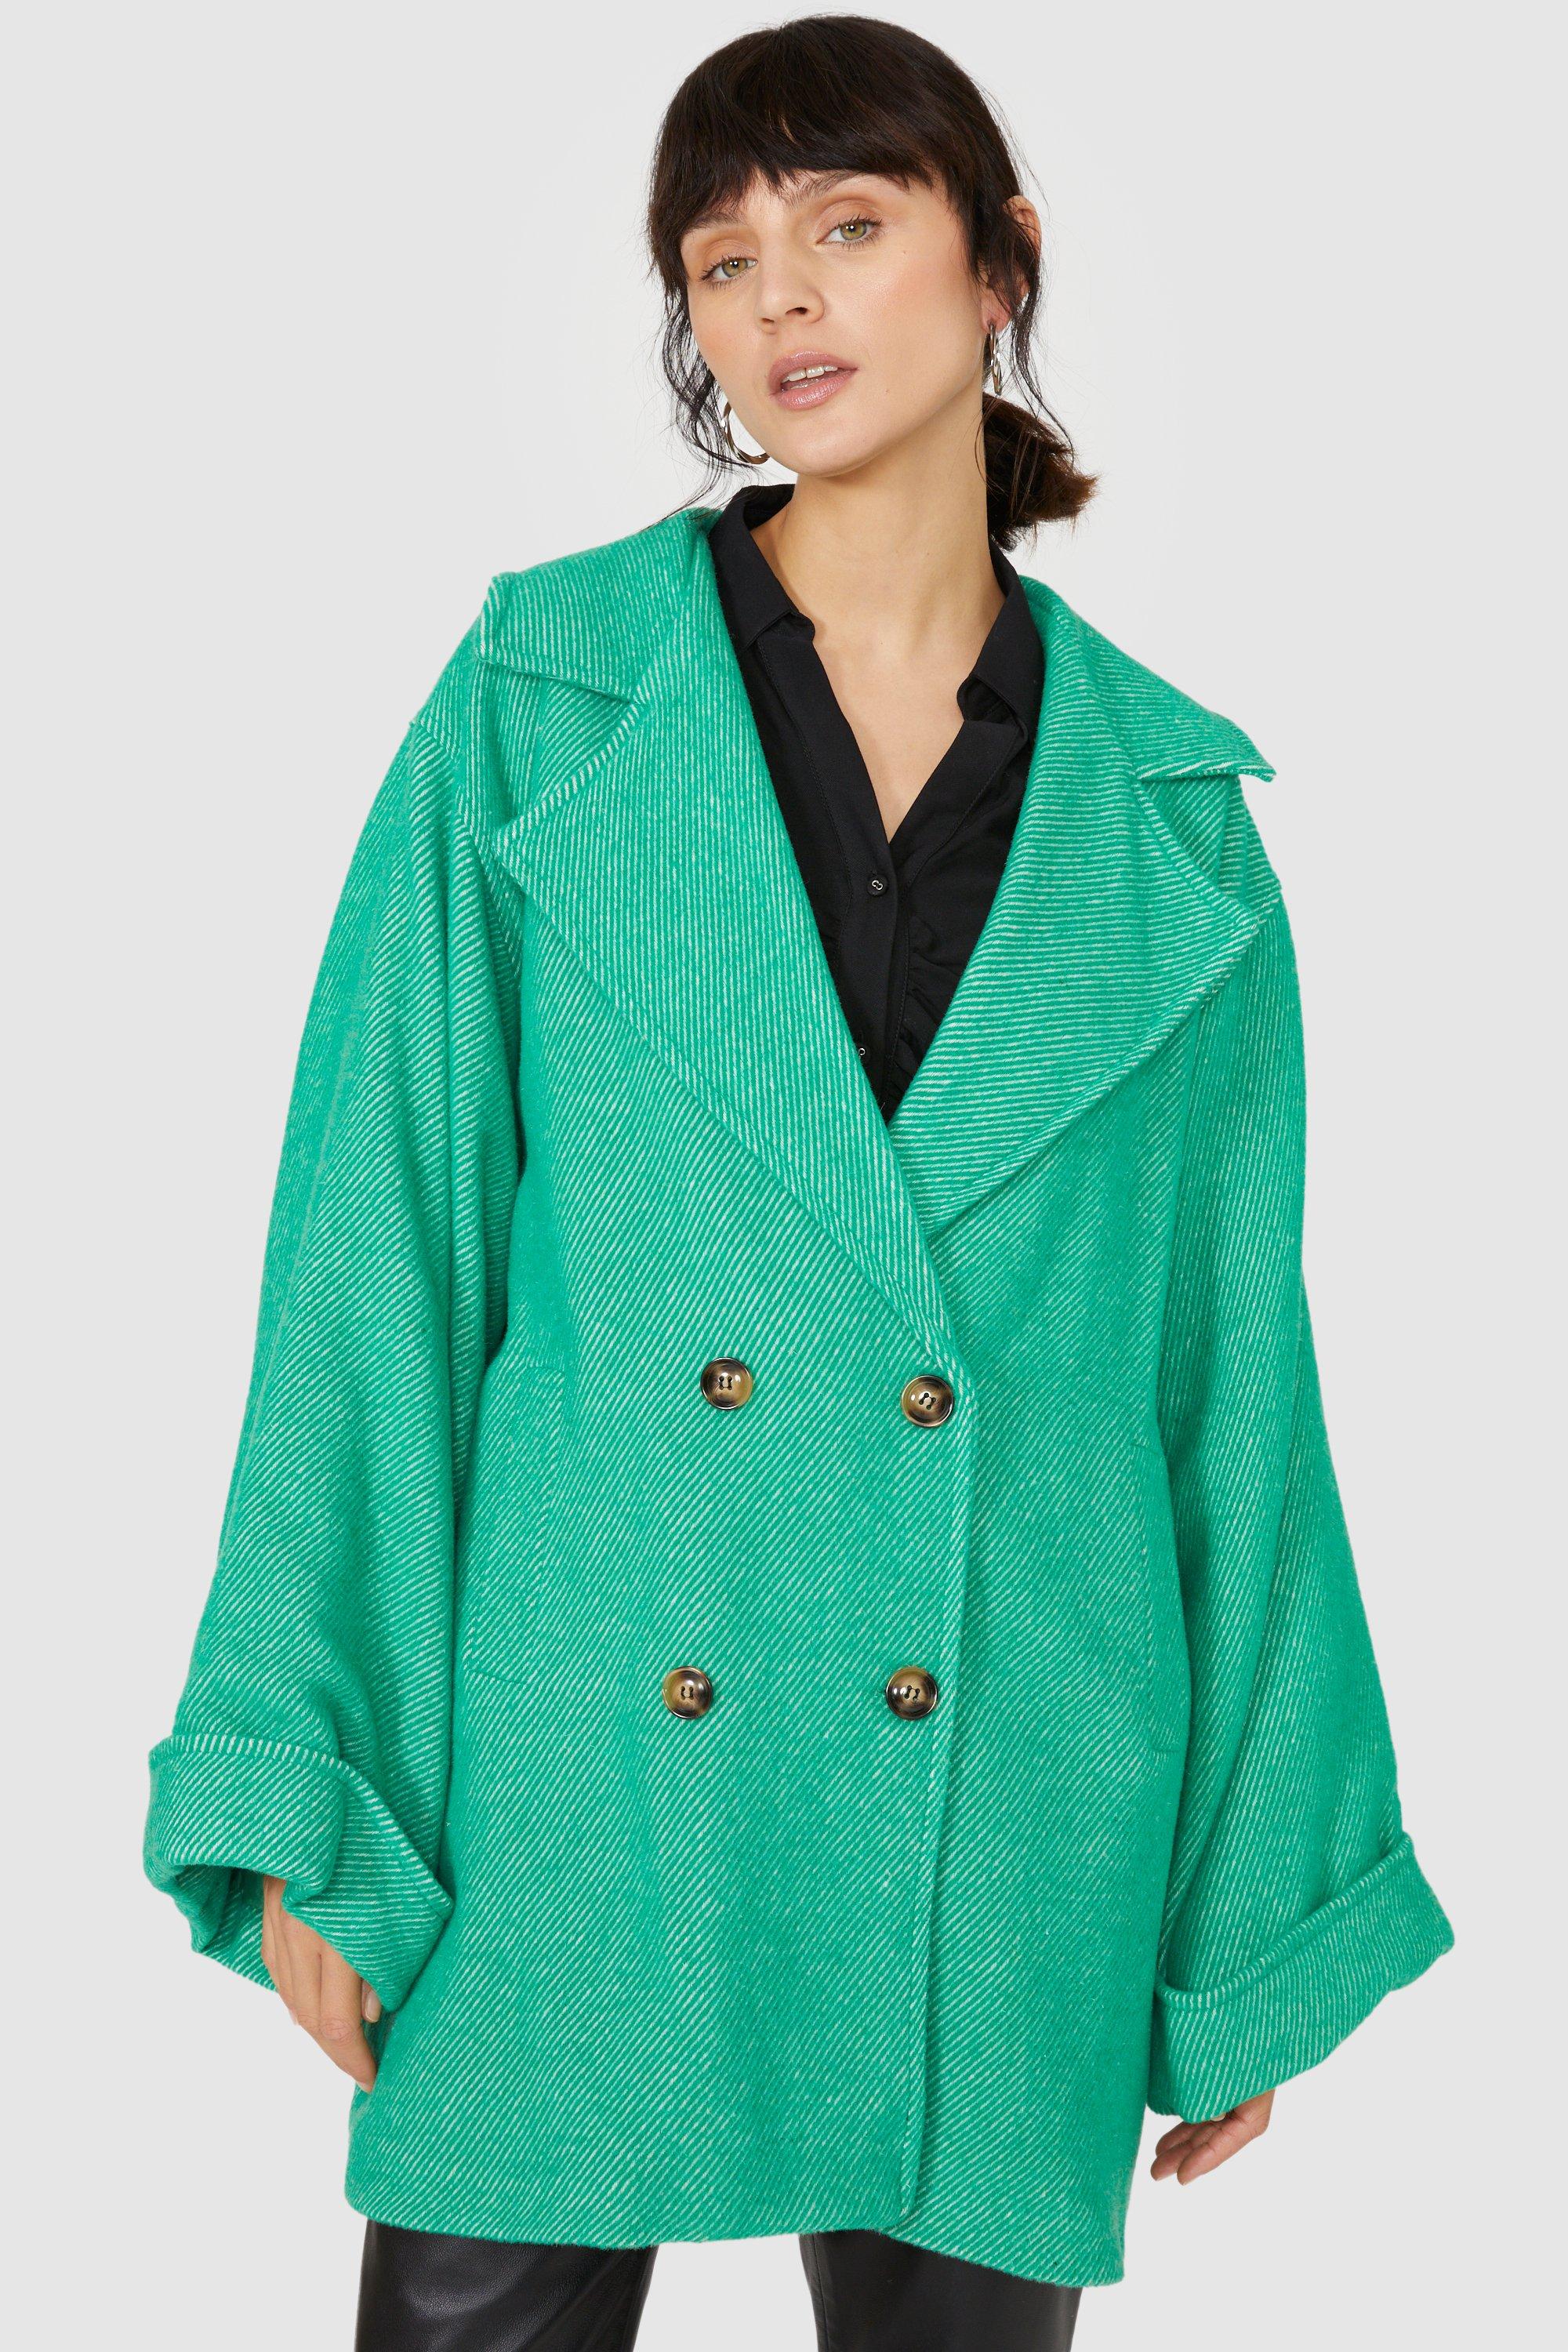 Пальто средней длины с узором «елочка» Debenhams, зеленый женское хлопковое пальто средней длины свободное зимнее пальто средней длины с капюшоном